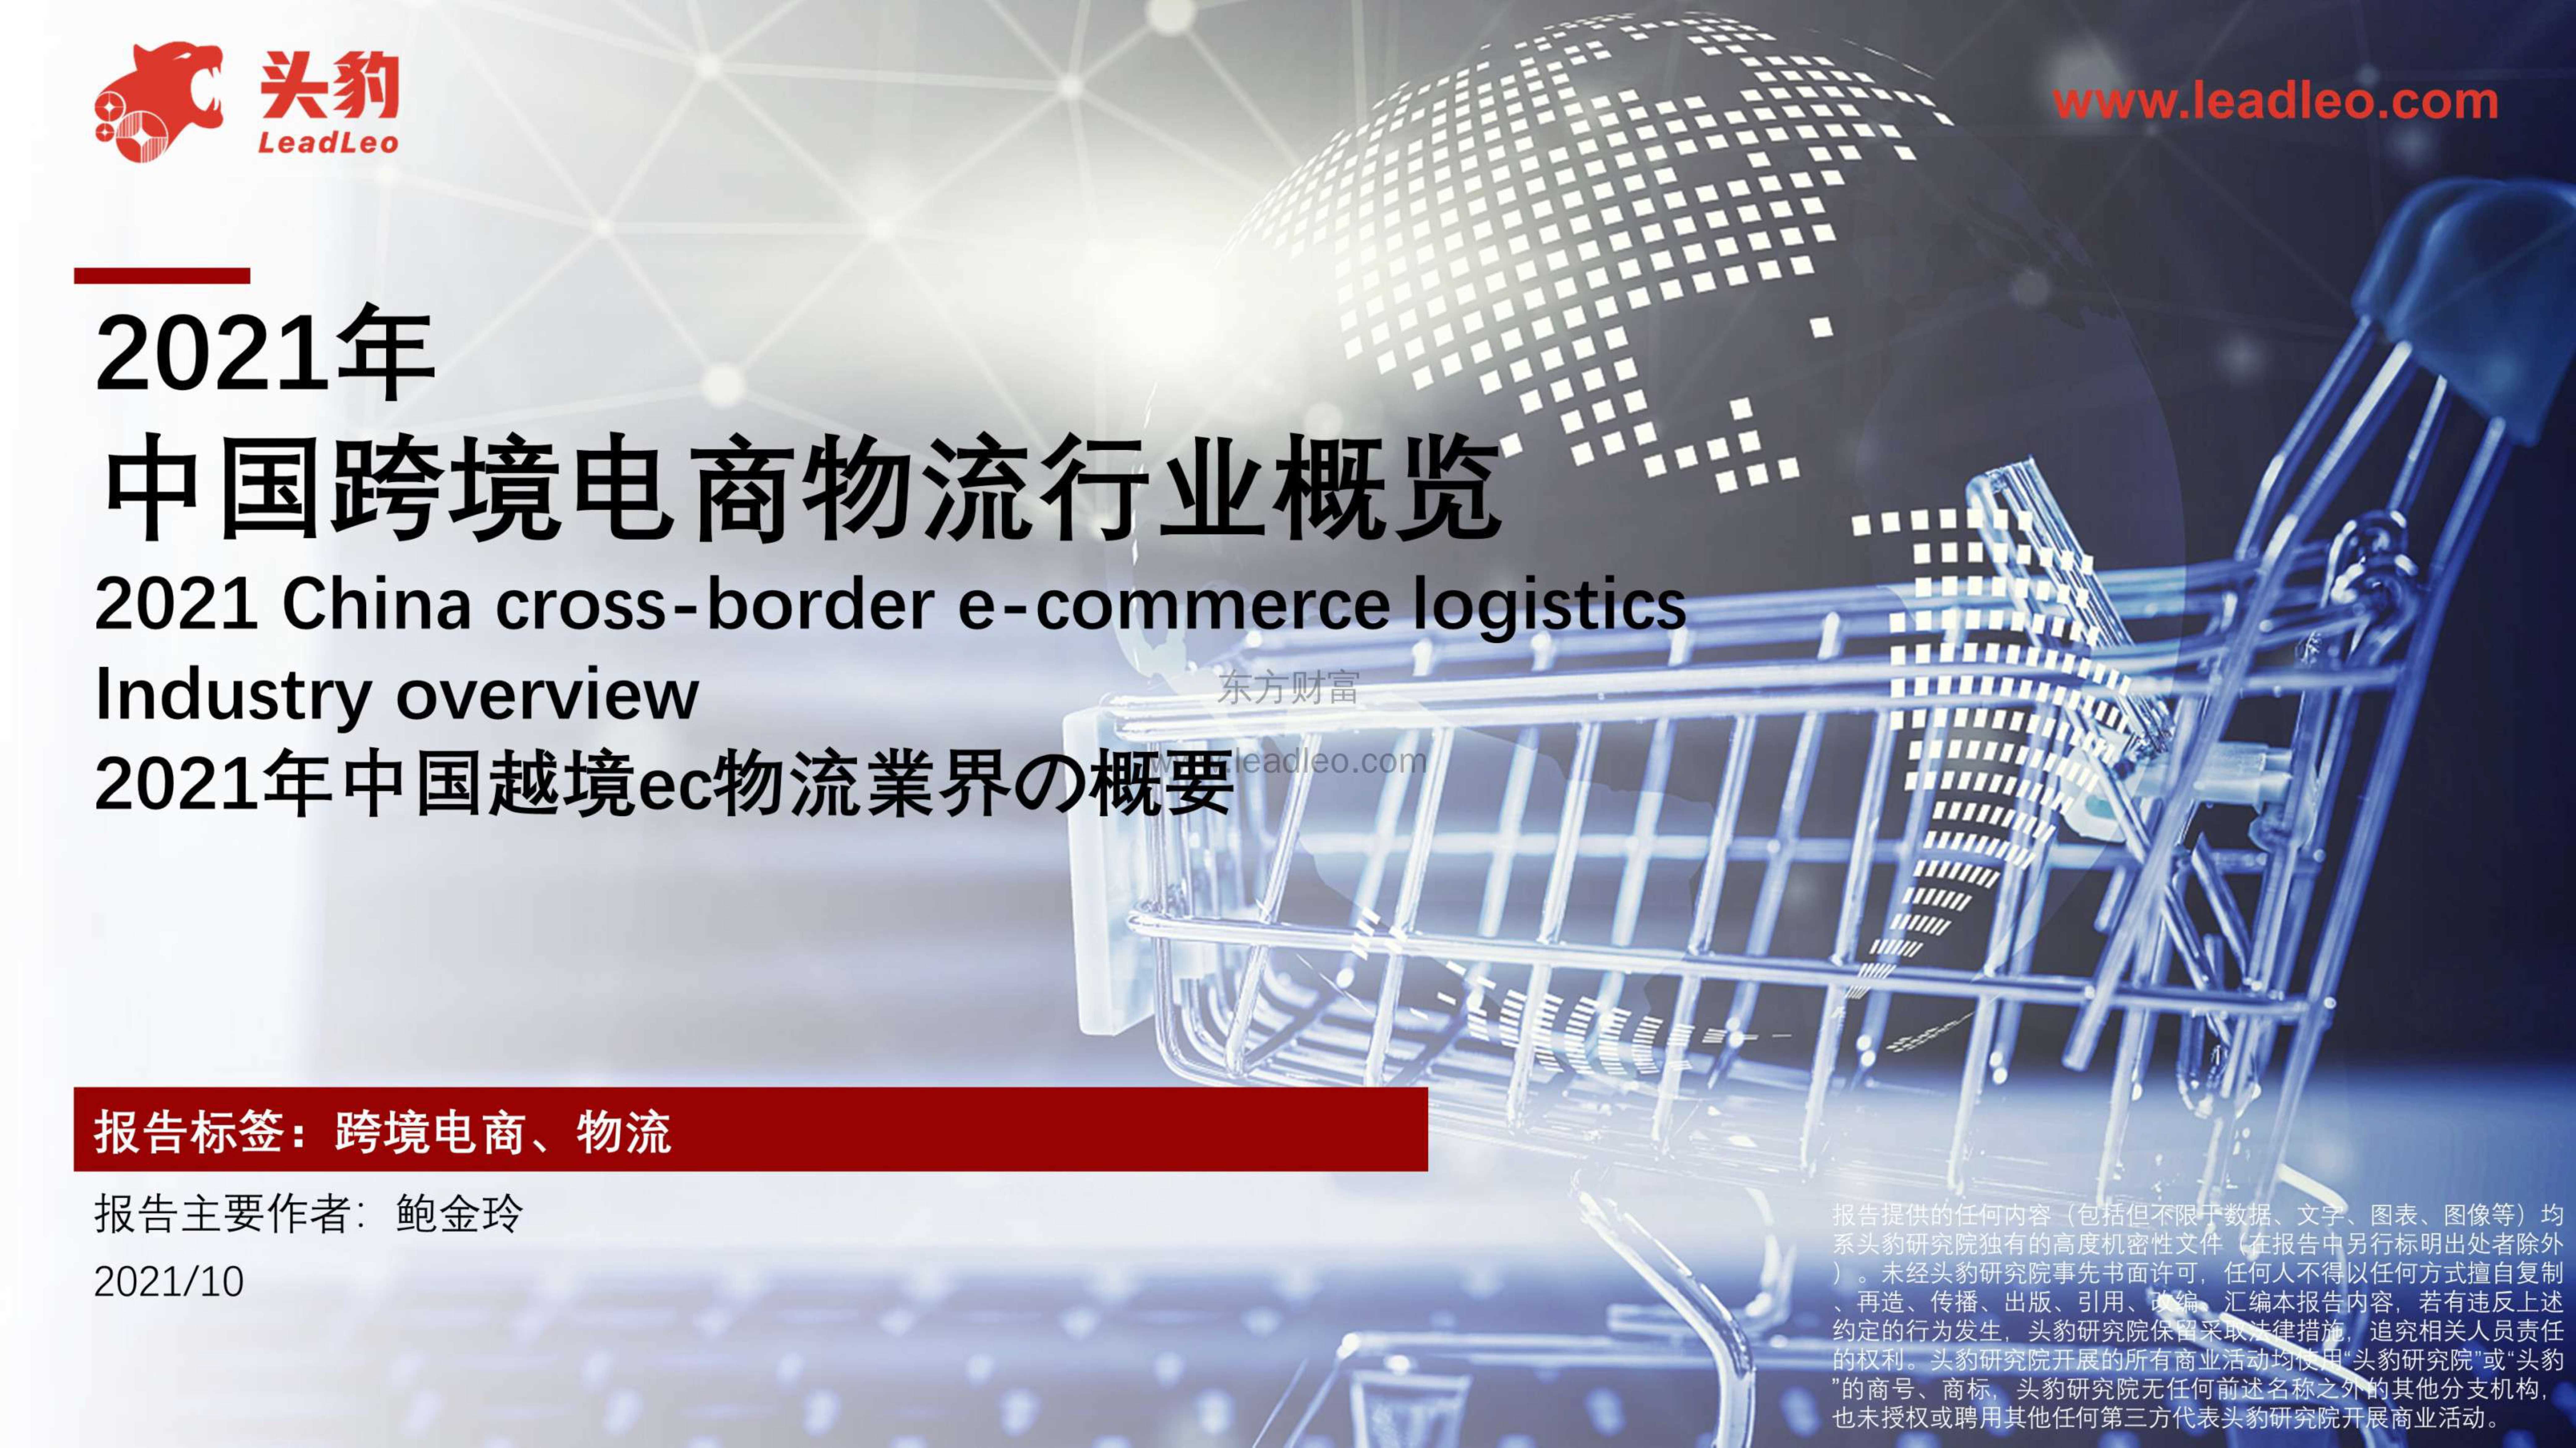 头豹研究院-2021年中国跨境电商物流行业概览-2021.11-41页